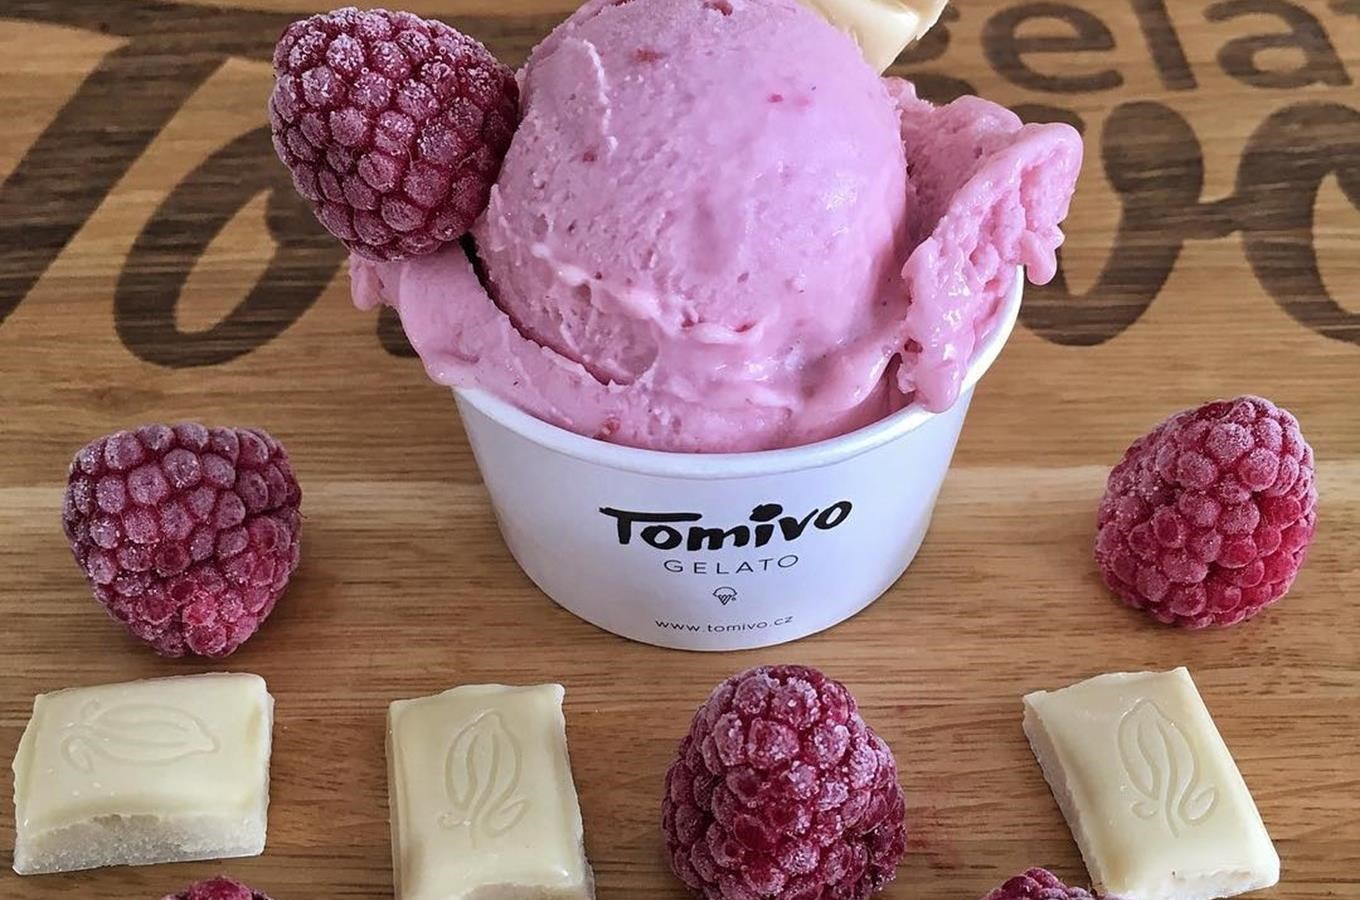 Zmrzlinárna Tomivo gelato v Lipůvce